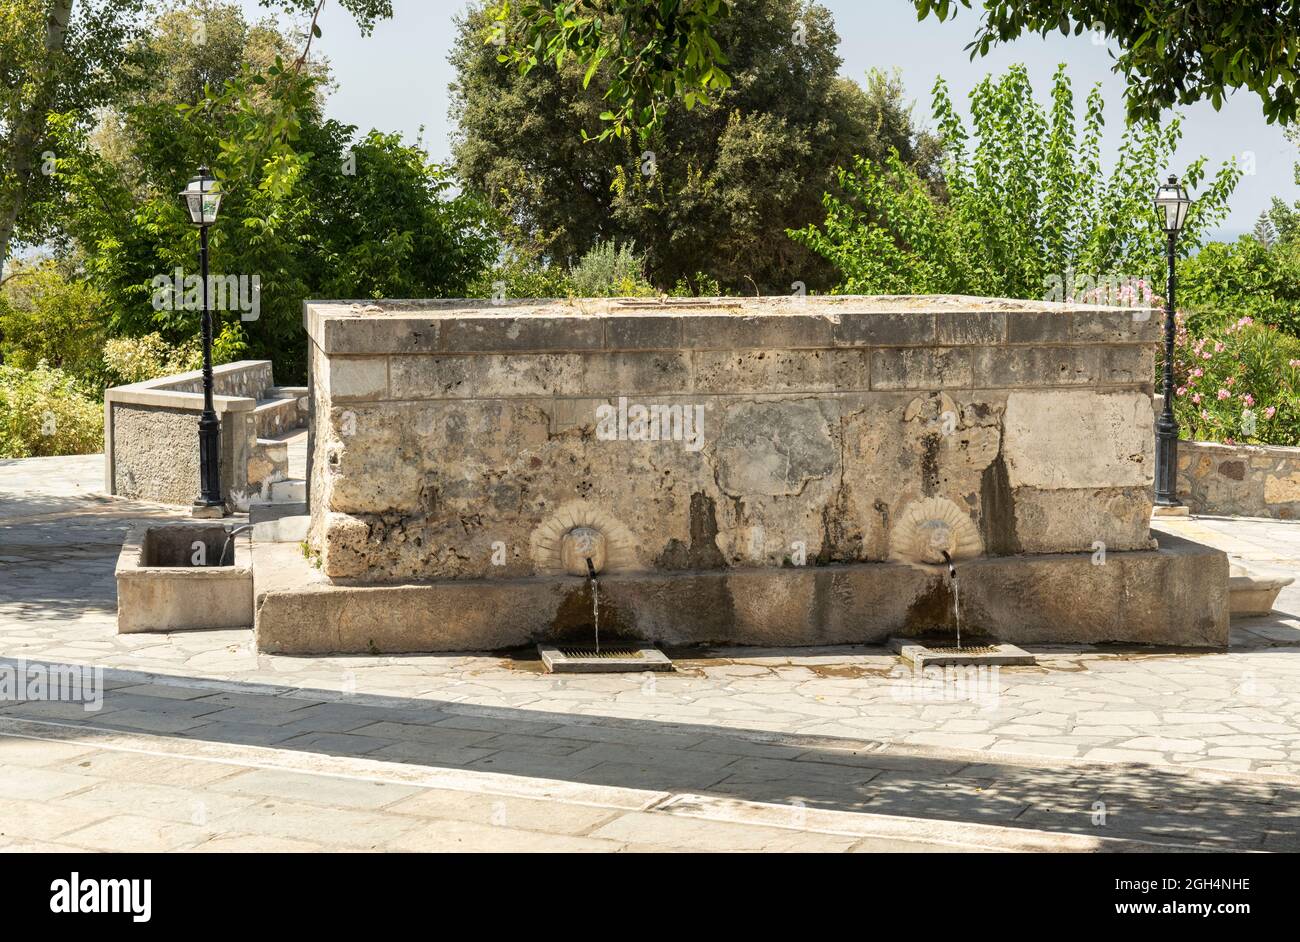 Abonnés la fontaine Pyli Spring avec 6 sculptures gargouille d'une tête de lions qui jaillissent de l'eau de source à travers une buse. Village de Pyli, Kos, Grèce. Banque D'Images